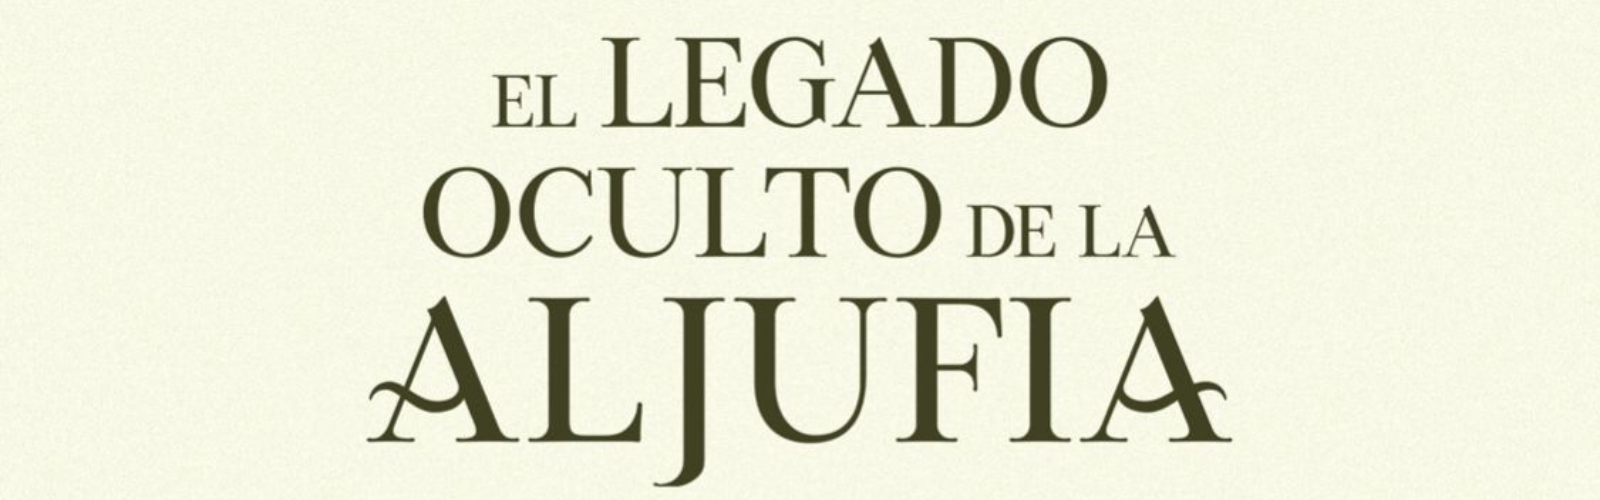 La UMU presenta ‘El legado oculto de la Aljufía’, un documental sobre la relación de la ciudad de Murcia con el río Segura